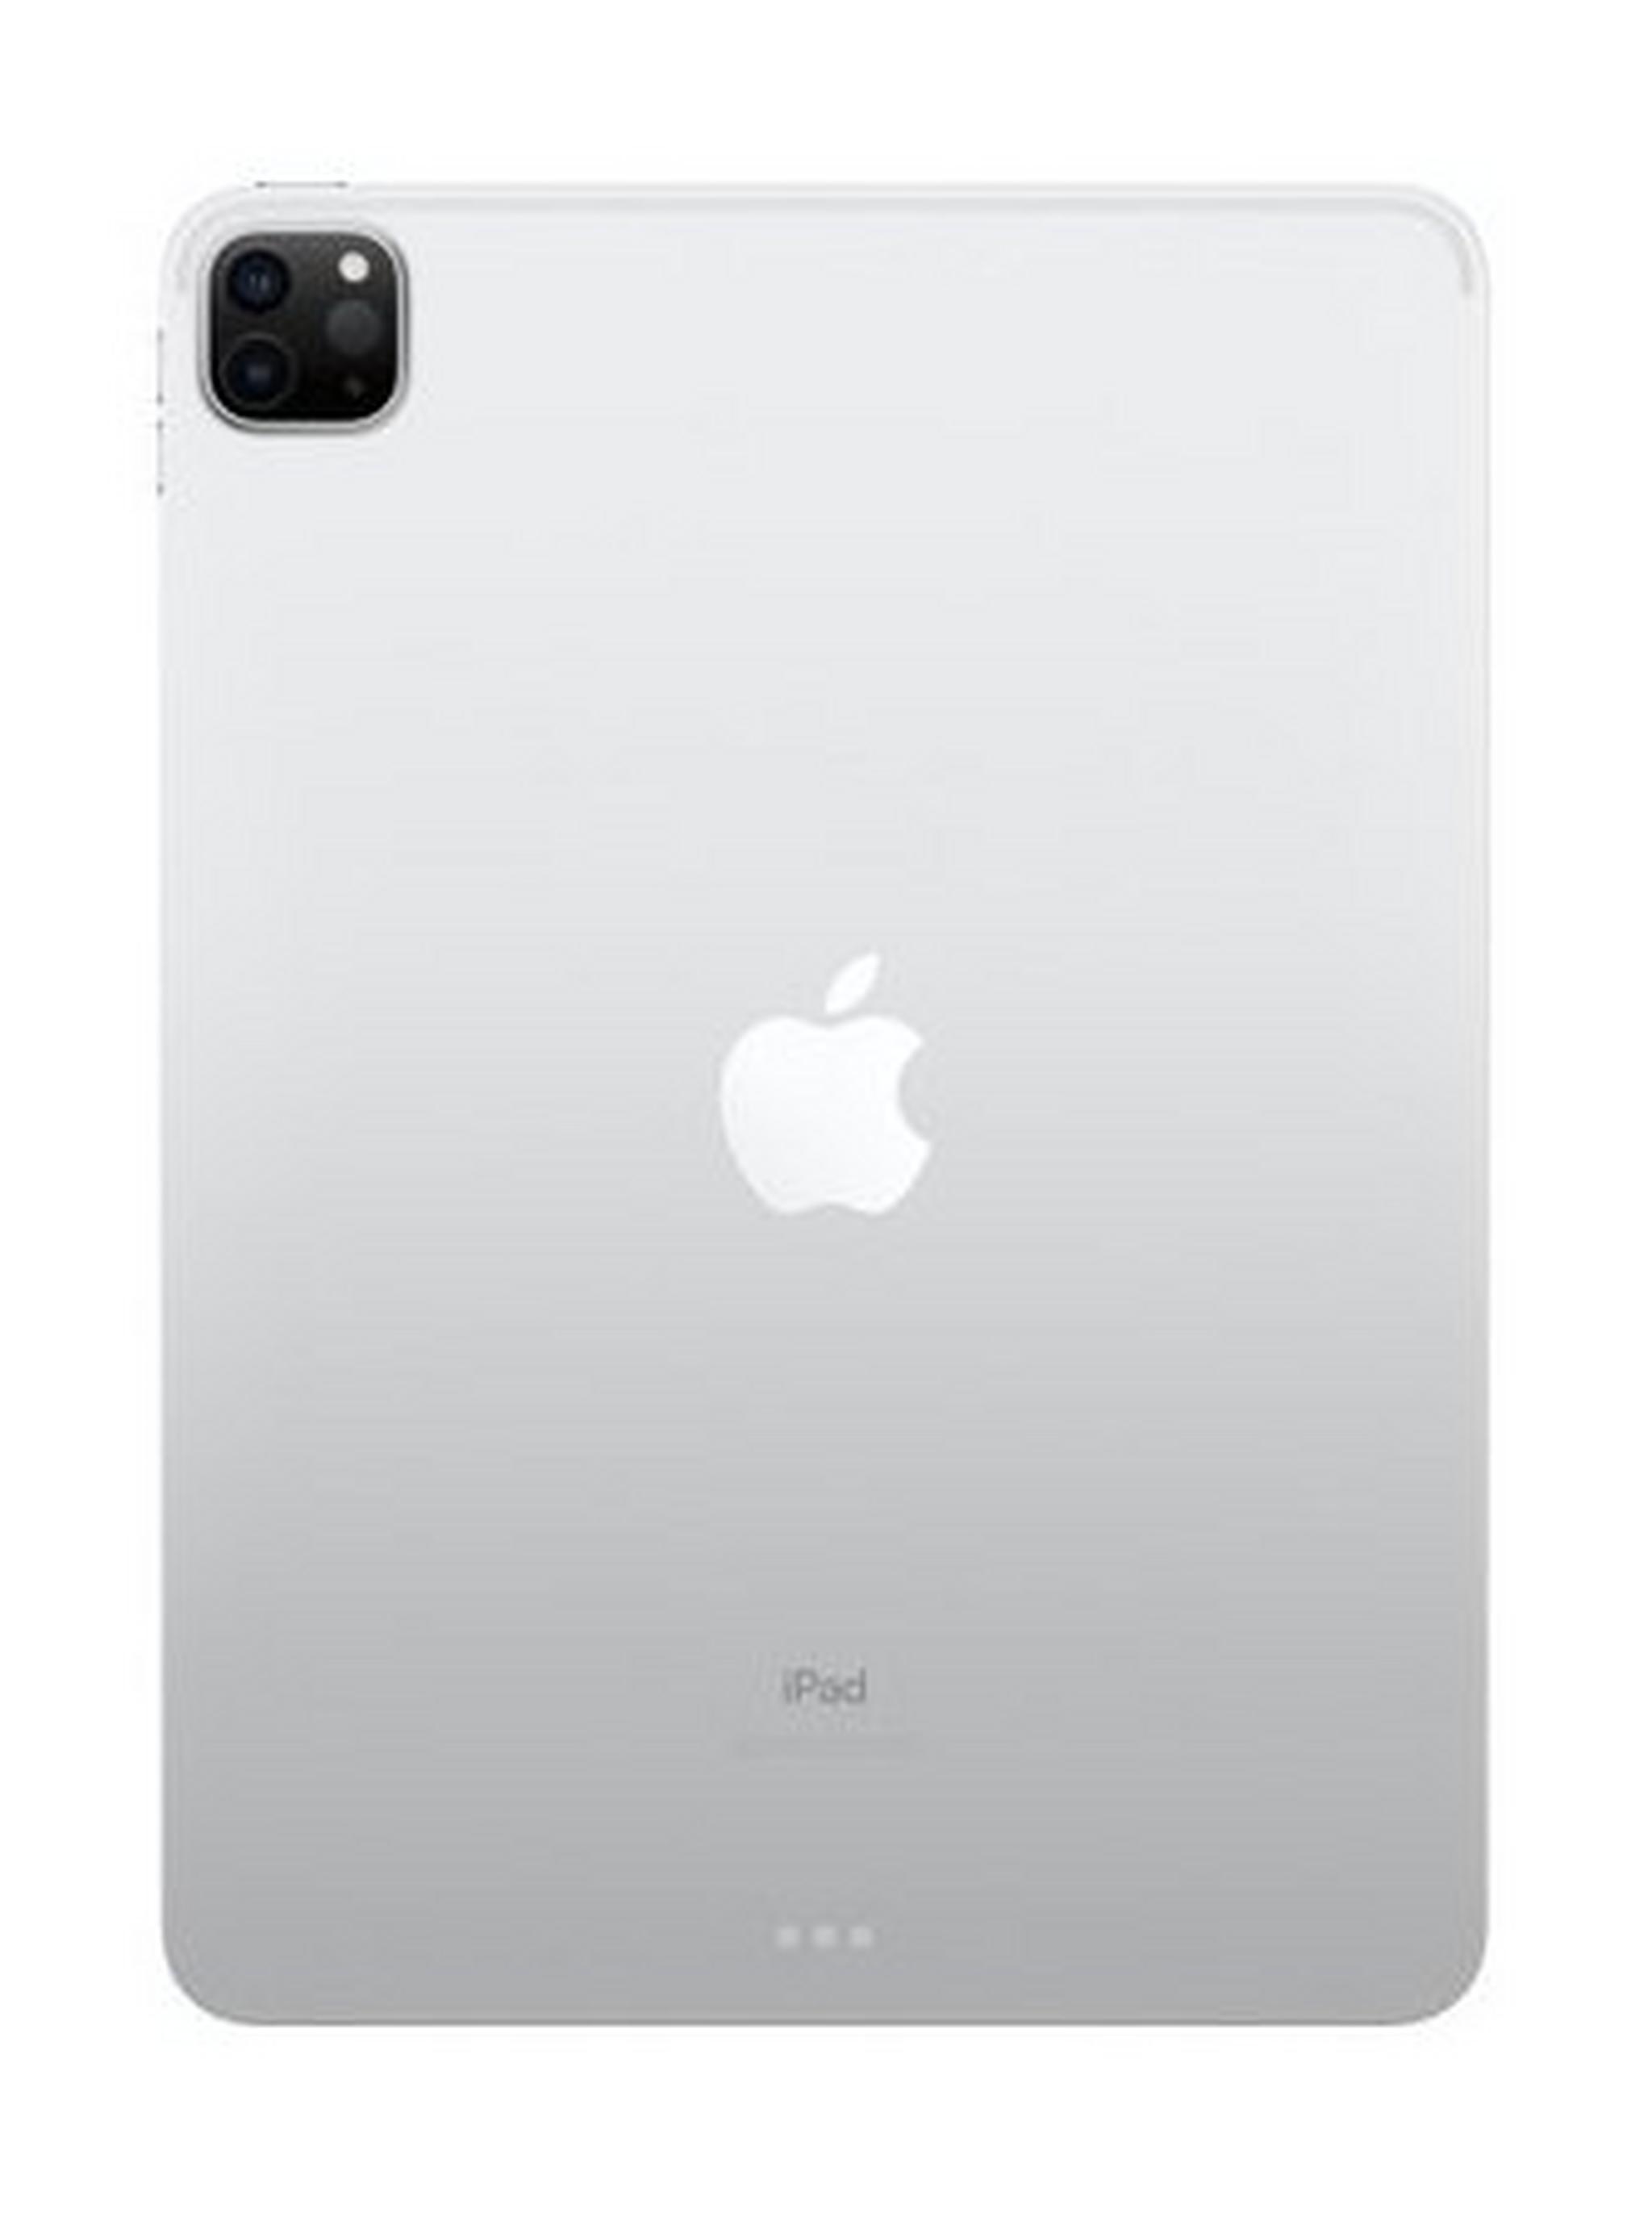 Apple IPad Pro (2020) 11-inch 256GB WiFi – Silver